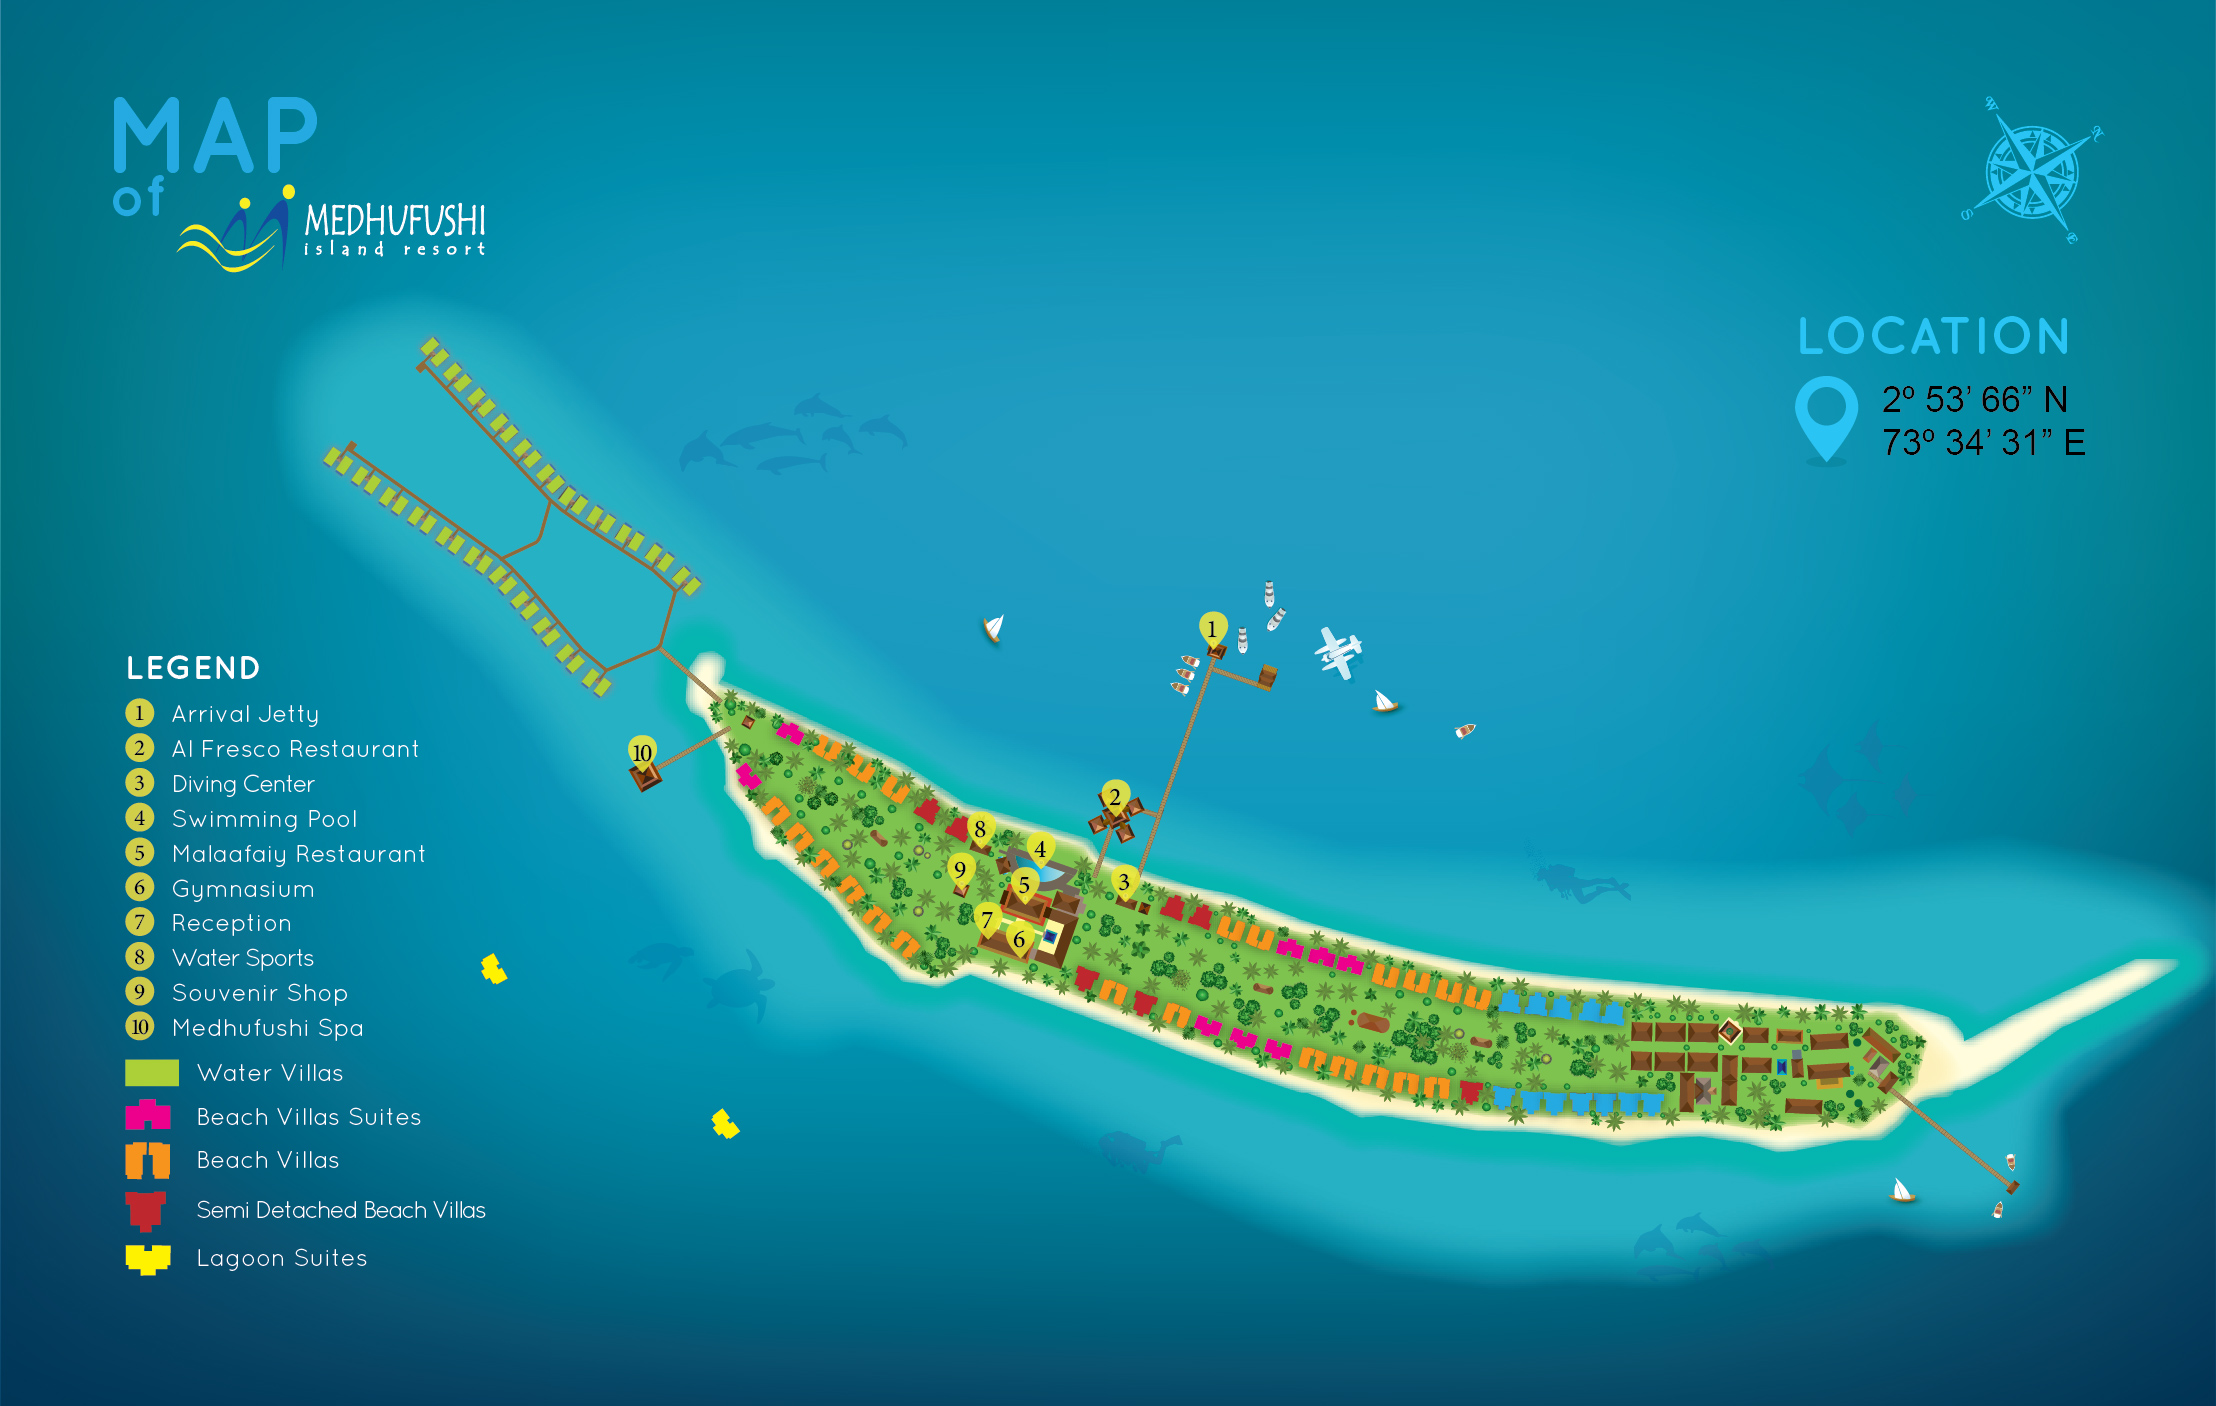 Medhufushi island 5. Отель Medhufushi Island Resort 4. Medhufushi Island Resort карта отеля. Мальдивы Medhufushi Island Resort 5 Мальдивы. Medhufushi Island Resort 5* карта отеля.